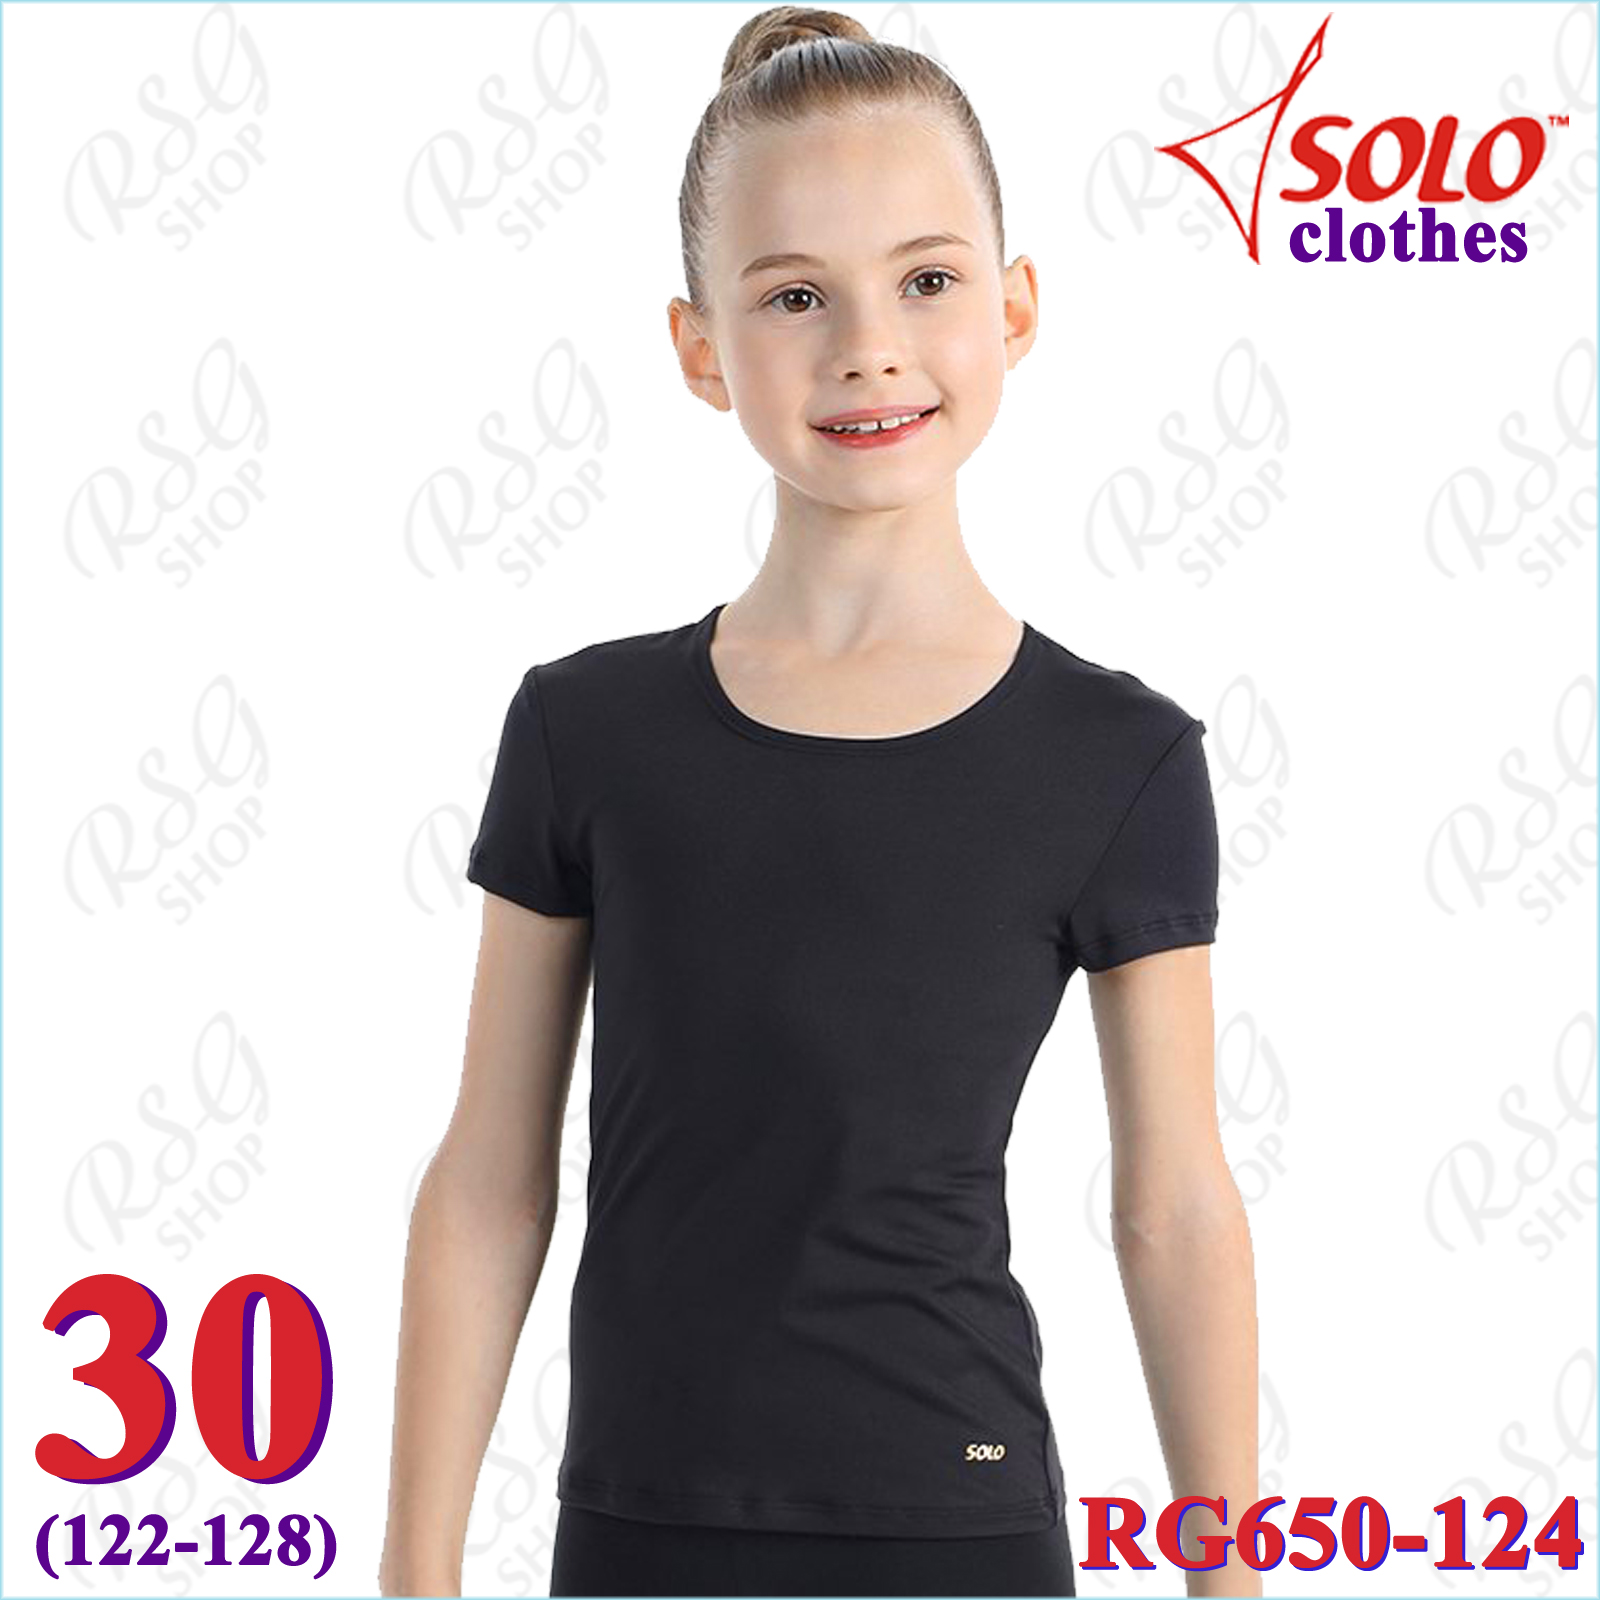 T-Shirt Solo Gr. 30 (122-128) col. Black Art. RG650-124-30